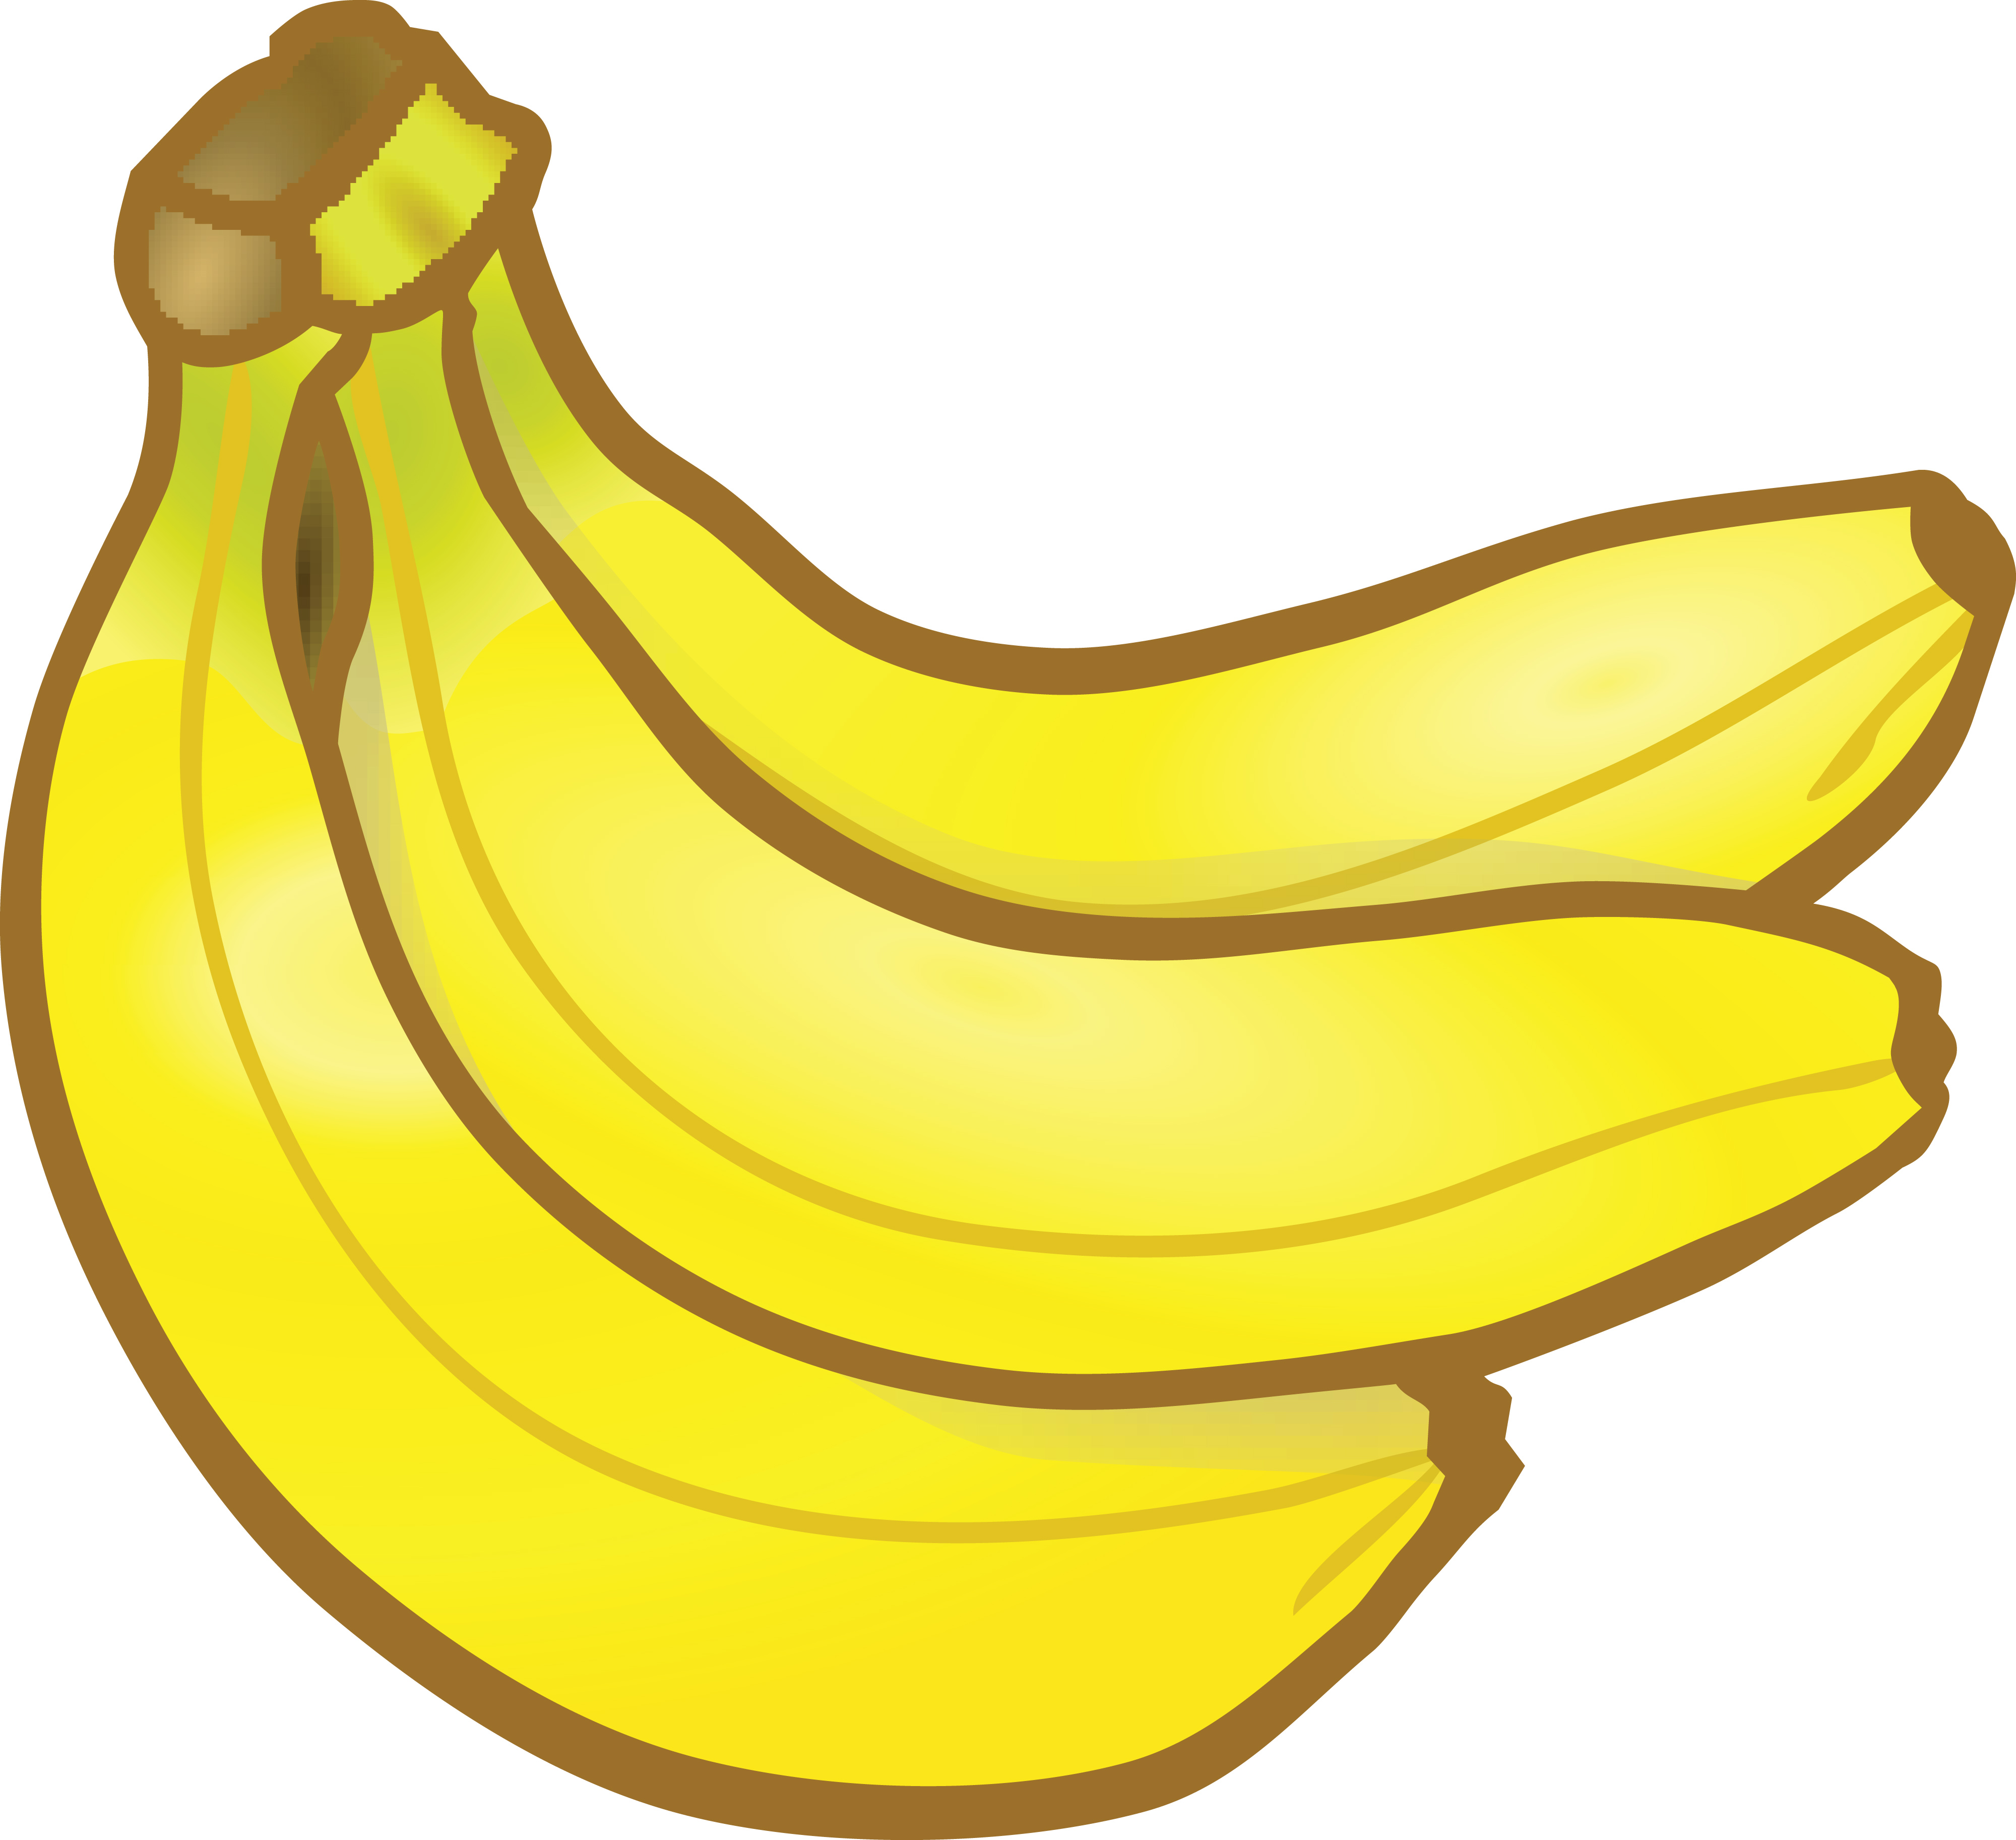 clipart of banana - photo #28